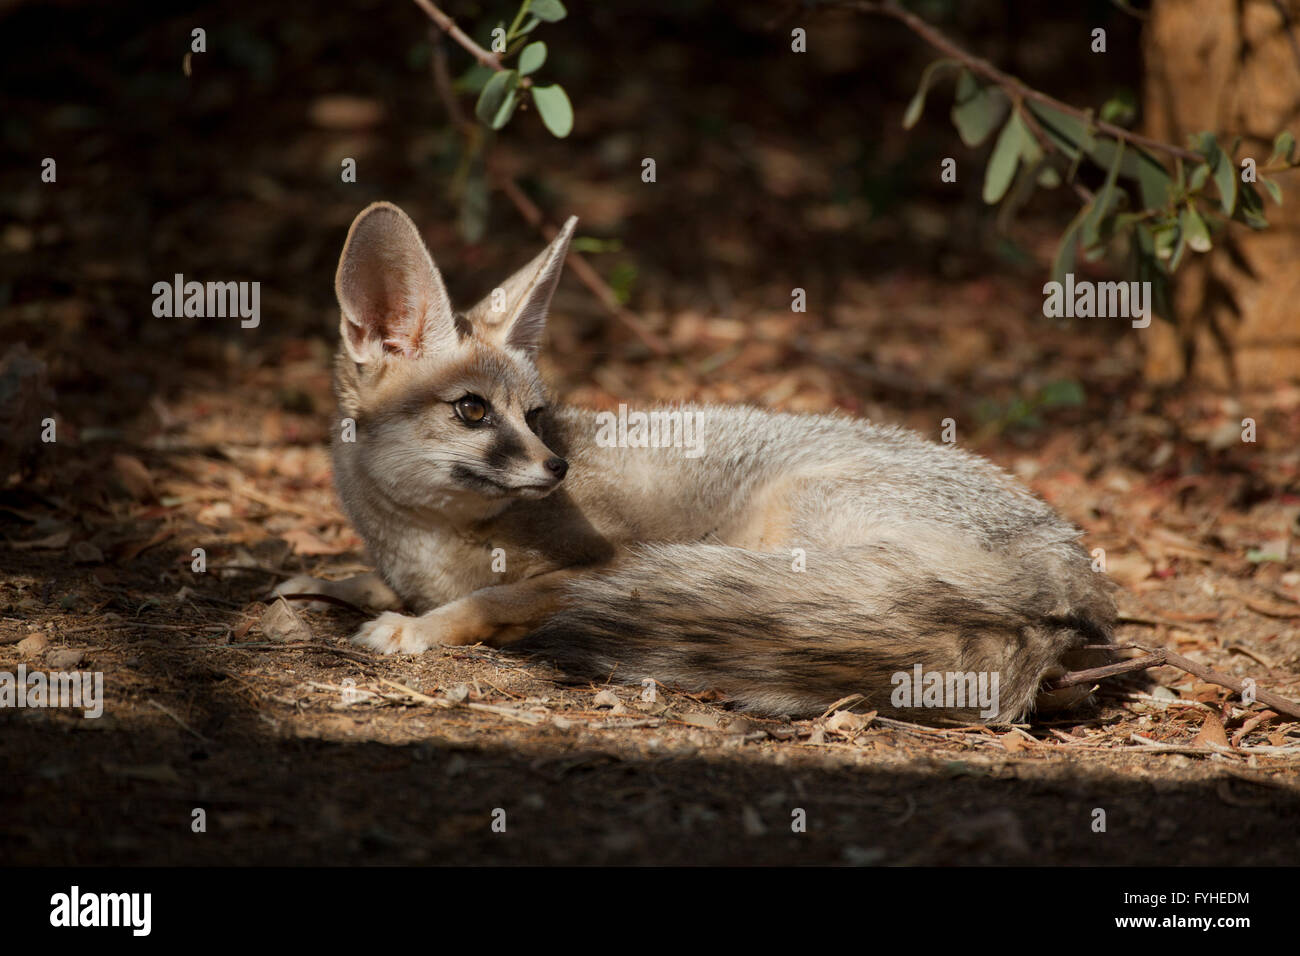 Israël, désert du Néguev, Blanford's Fox (Vulpes cana) un petit fox que l'on trouve dans certaines régions du Moyen-Orient. Banque D'Images